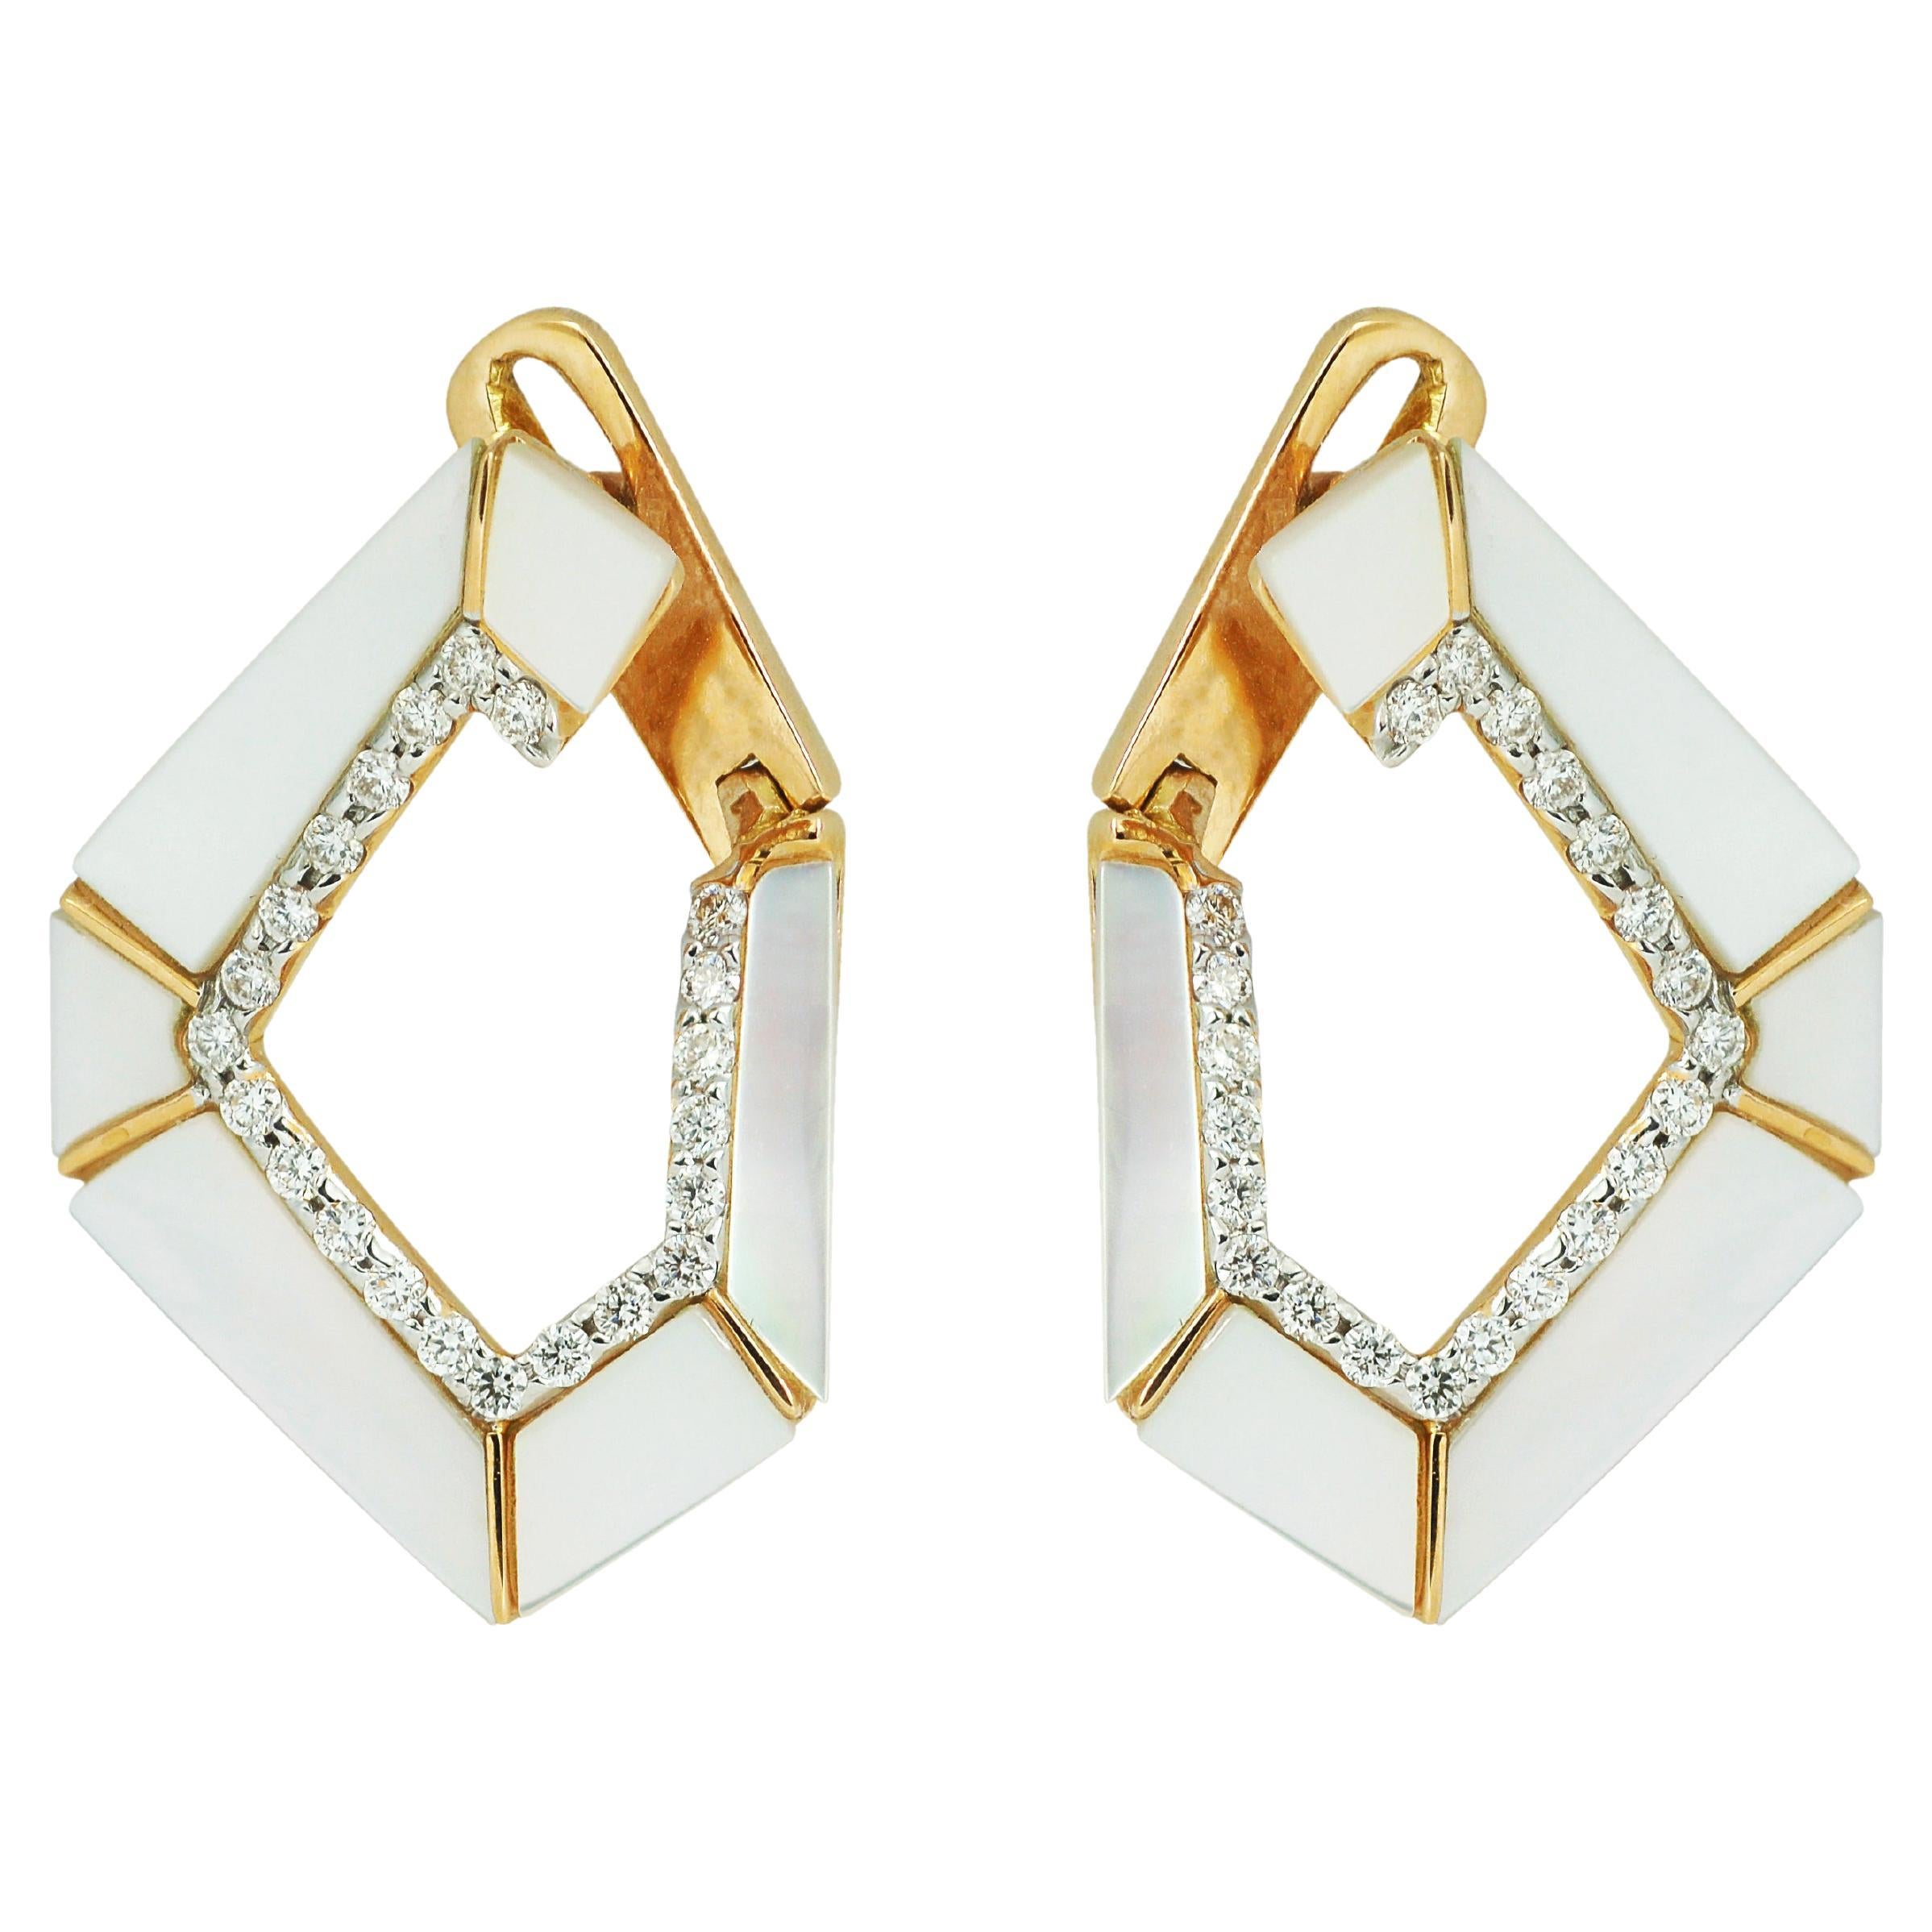 Boucles d'oreilles à maillons Origami n° 5 en or 18 carats, nacre et diamants